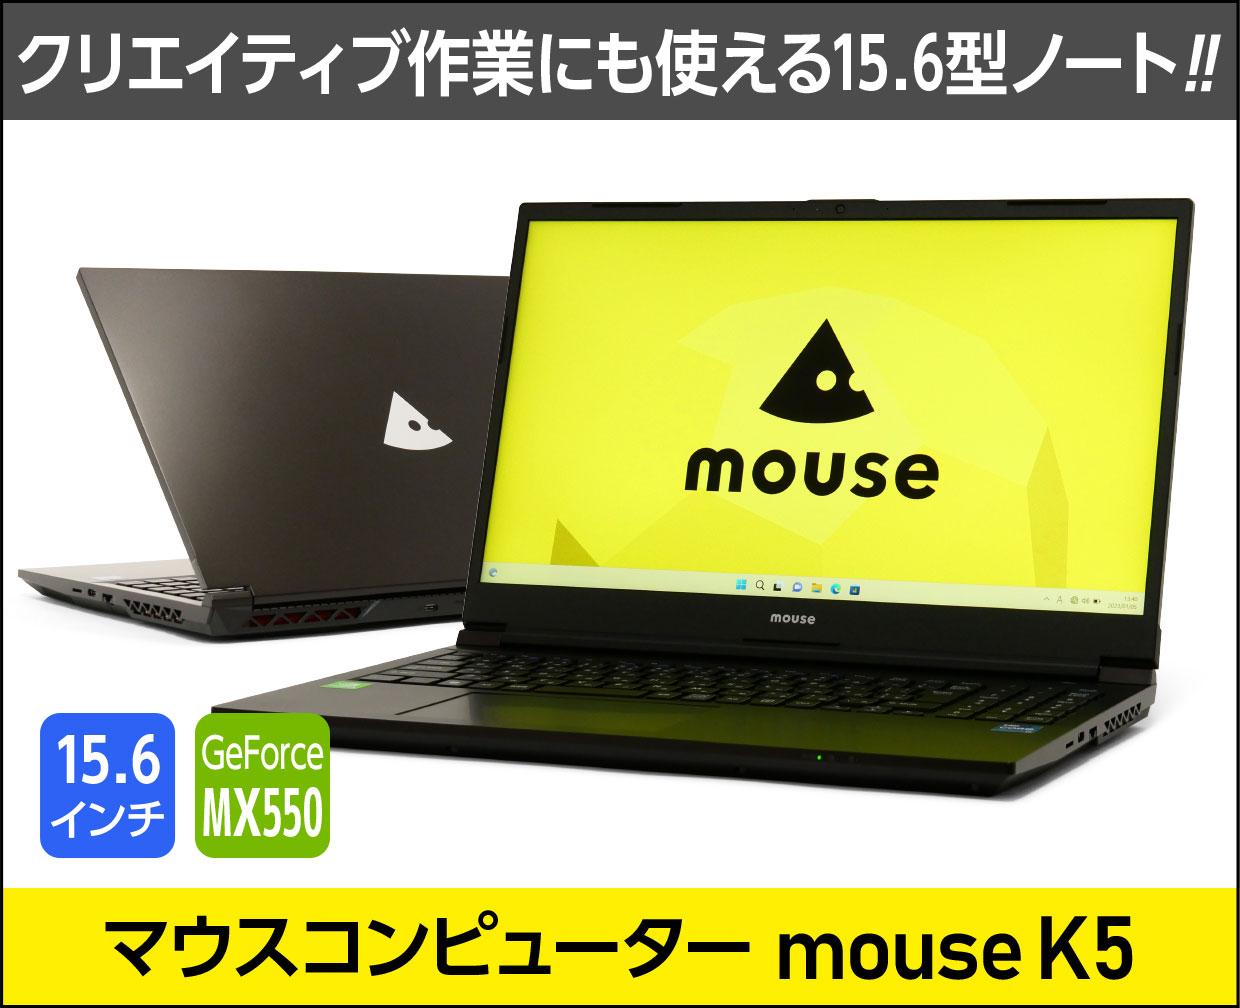 マウスコンピューター mouse K5のメイン画像